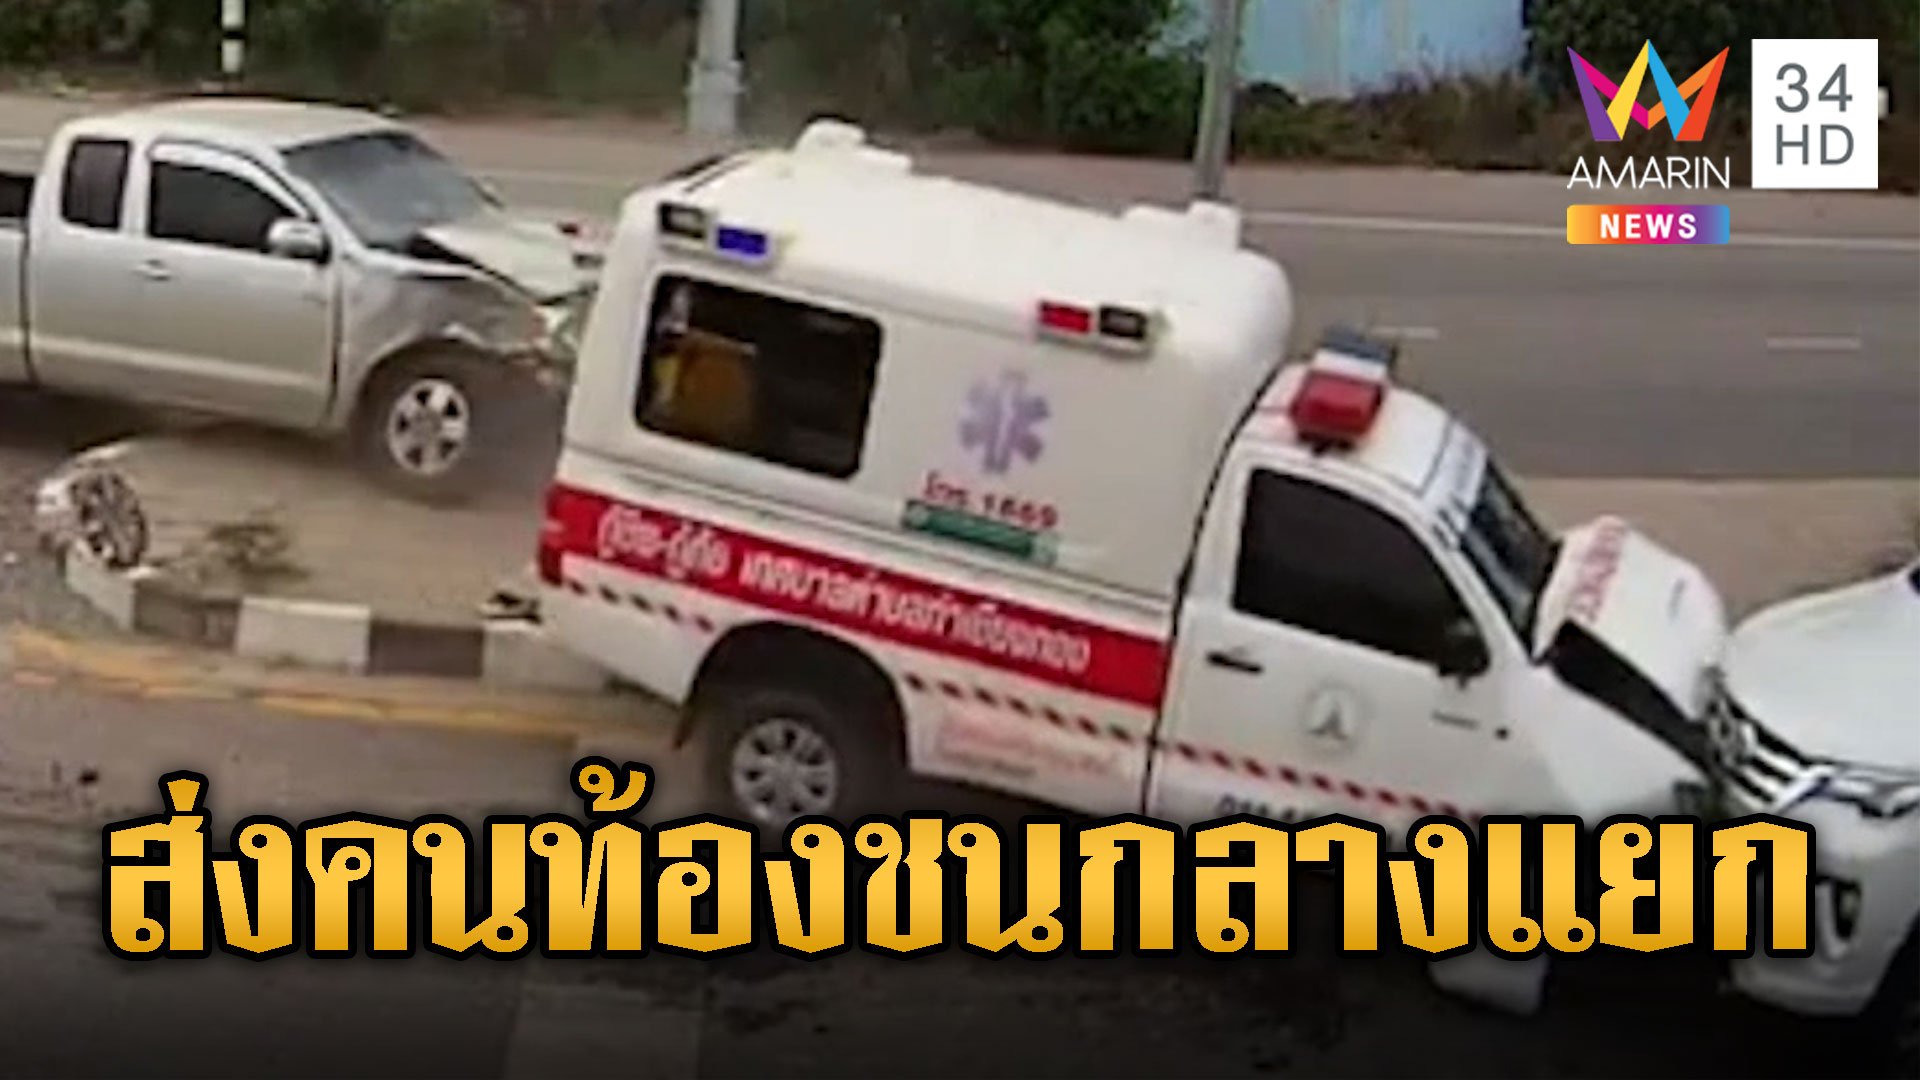 รถกู้ภัยฝ่าไฟแดงส่งสาวท้องแก่ ชนกระบะกลางแยกไฟแดงหวิดดับ | ข่าวอรุณอมรินทร์ | 30 พ.ค. 67 | AMARIN TVHD34